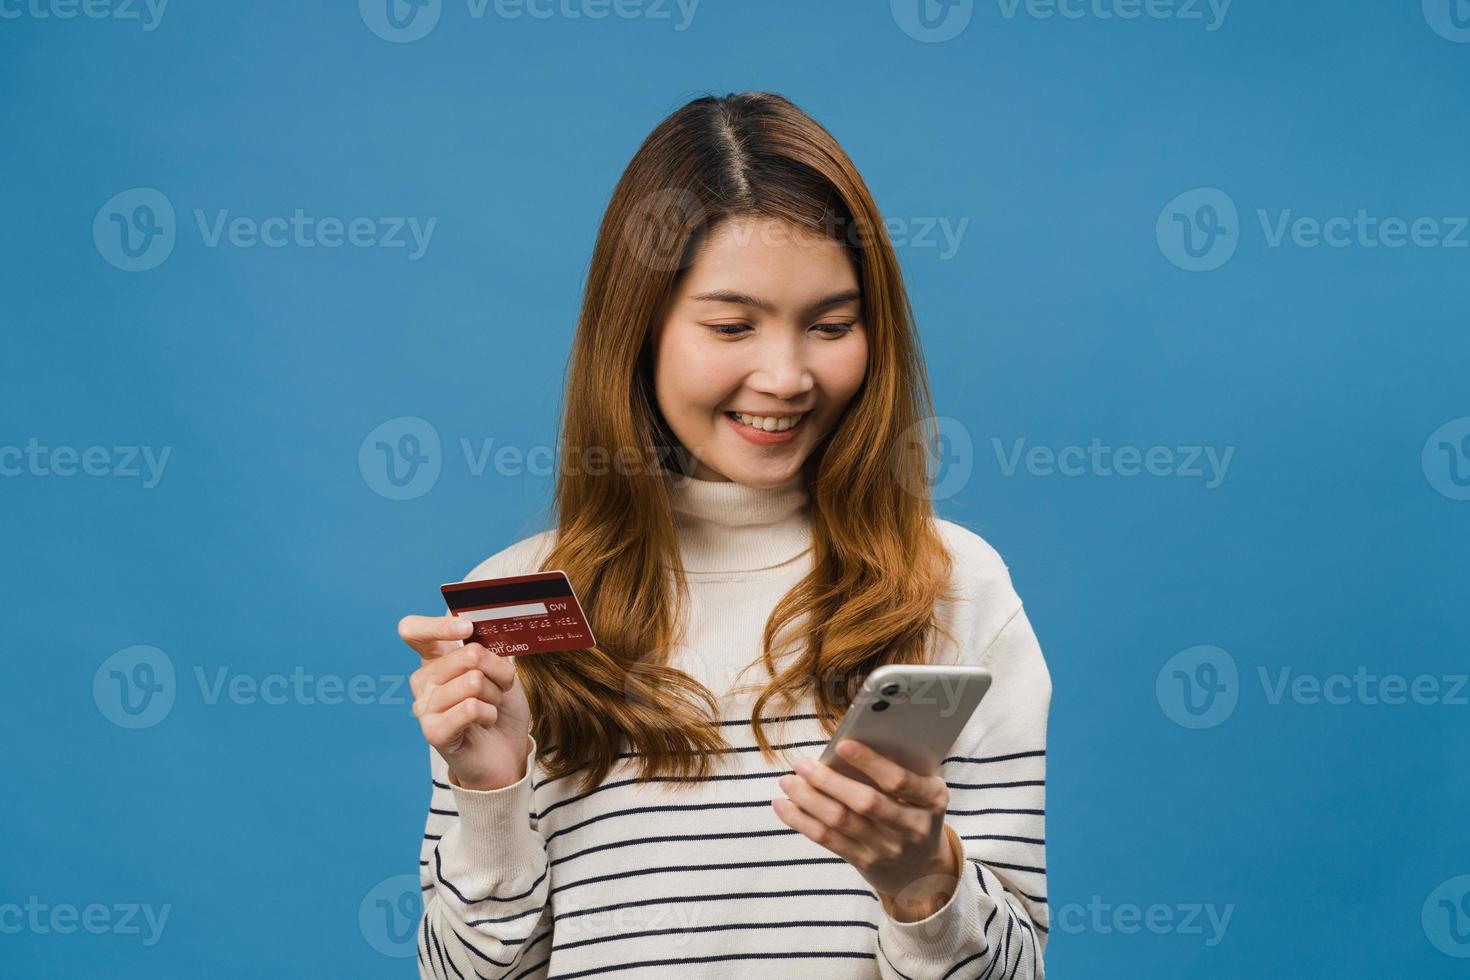 jeune femme asiatique utilisant un téléphone et une carte bancaire de crédit avec une expression positive, sourit largement, vêtue de vêtements décontractés et se tient isolée sur fond bleu. heureuse adorable femme heureuse se réjouit du succès. photo